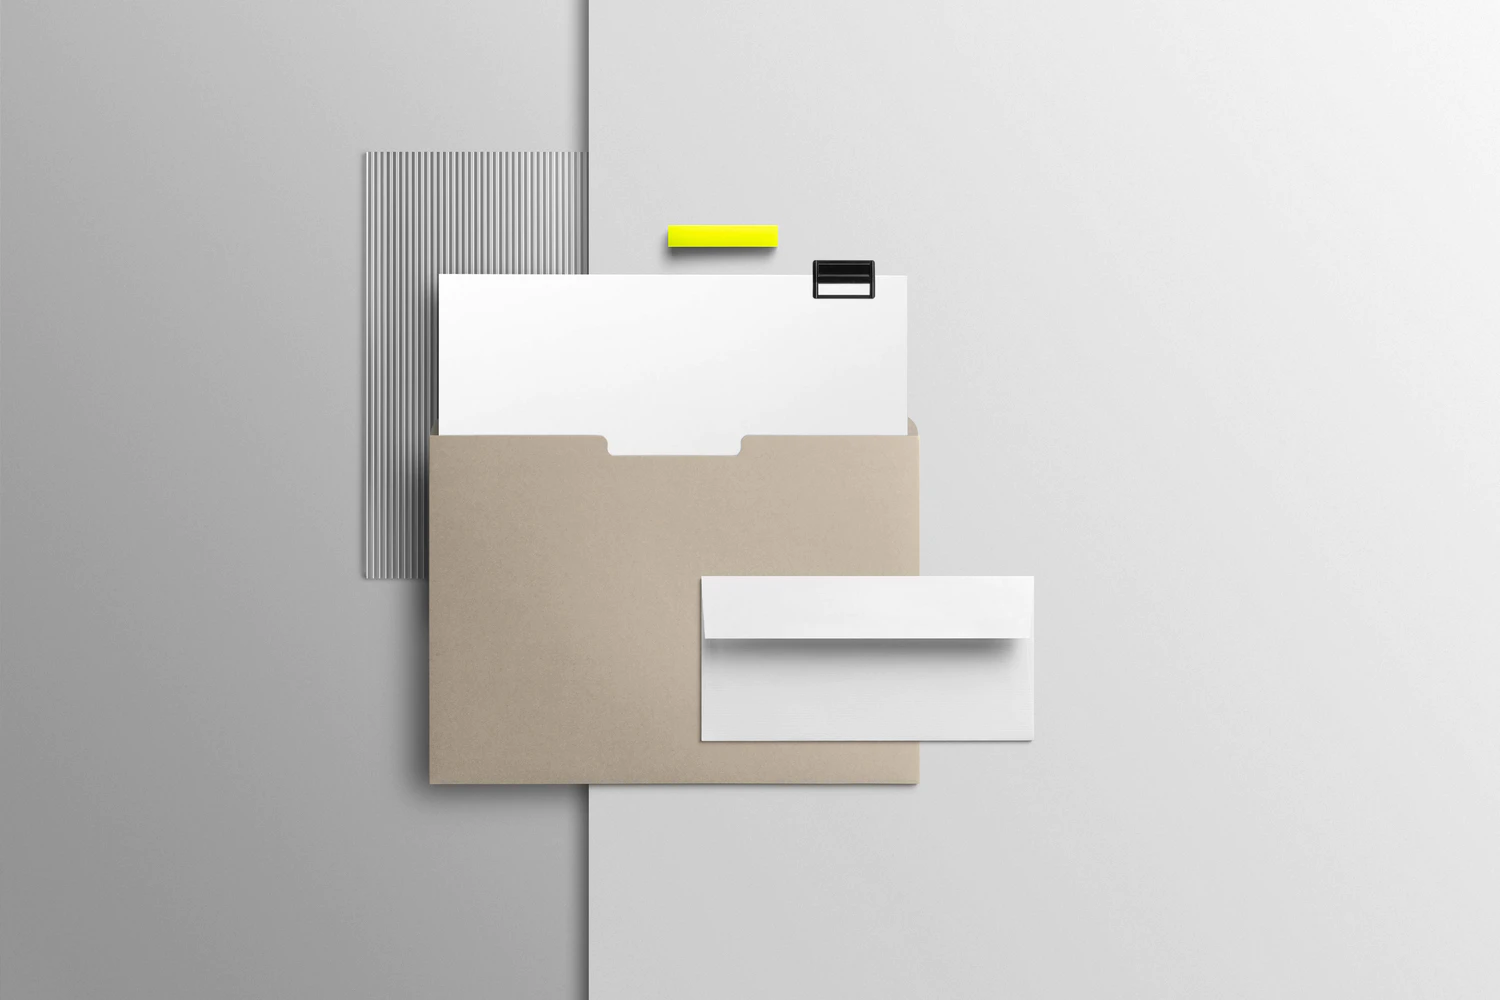 2078 21款现代时尚品牌vi设计笔记本名片信纸文具展示贴图ps样机模版 Core Branding Mockup